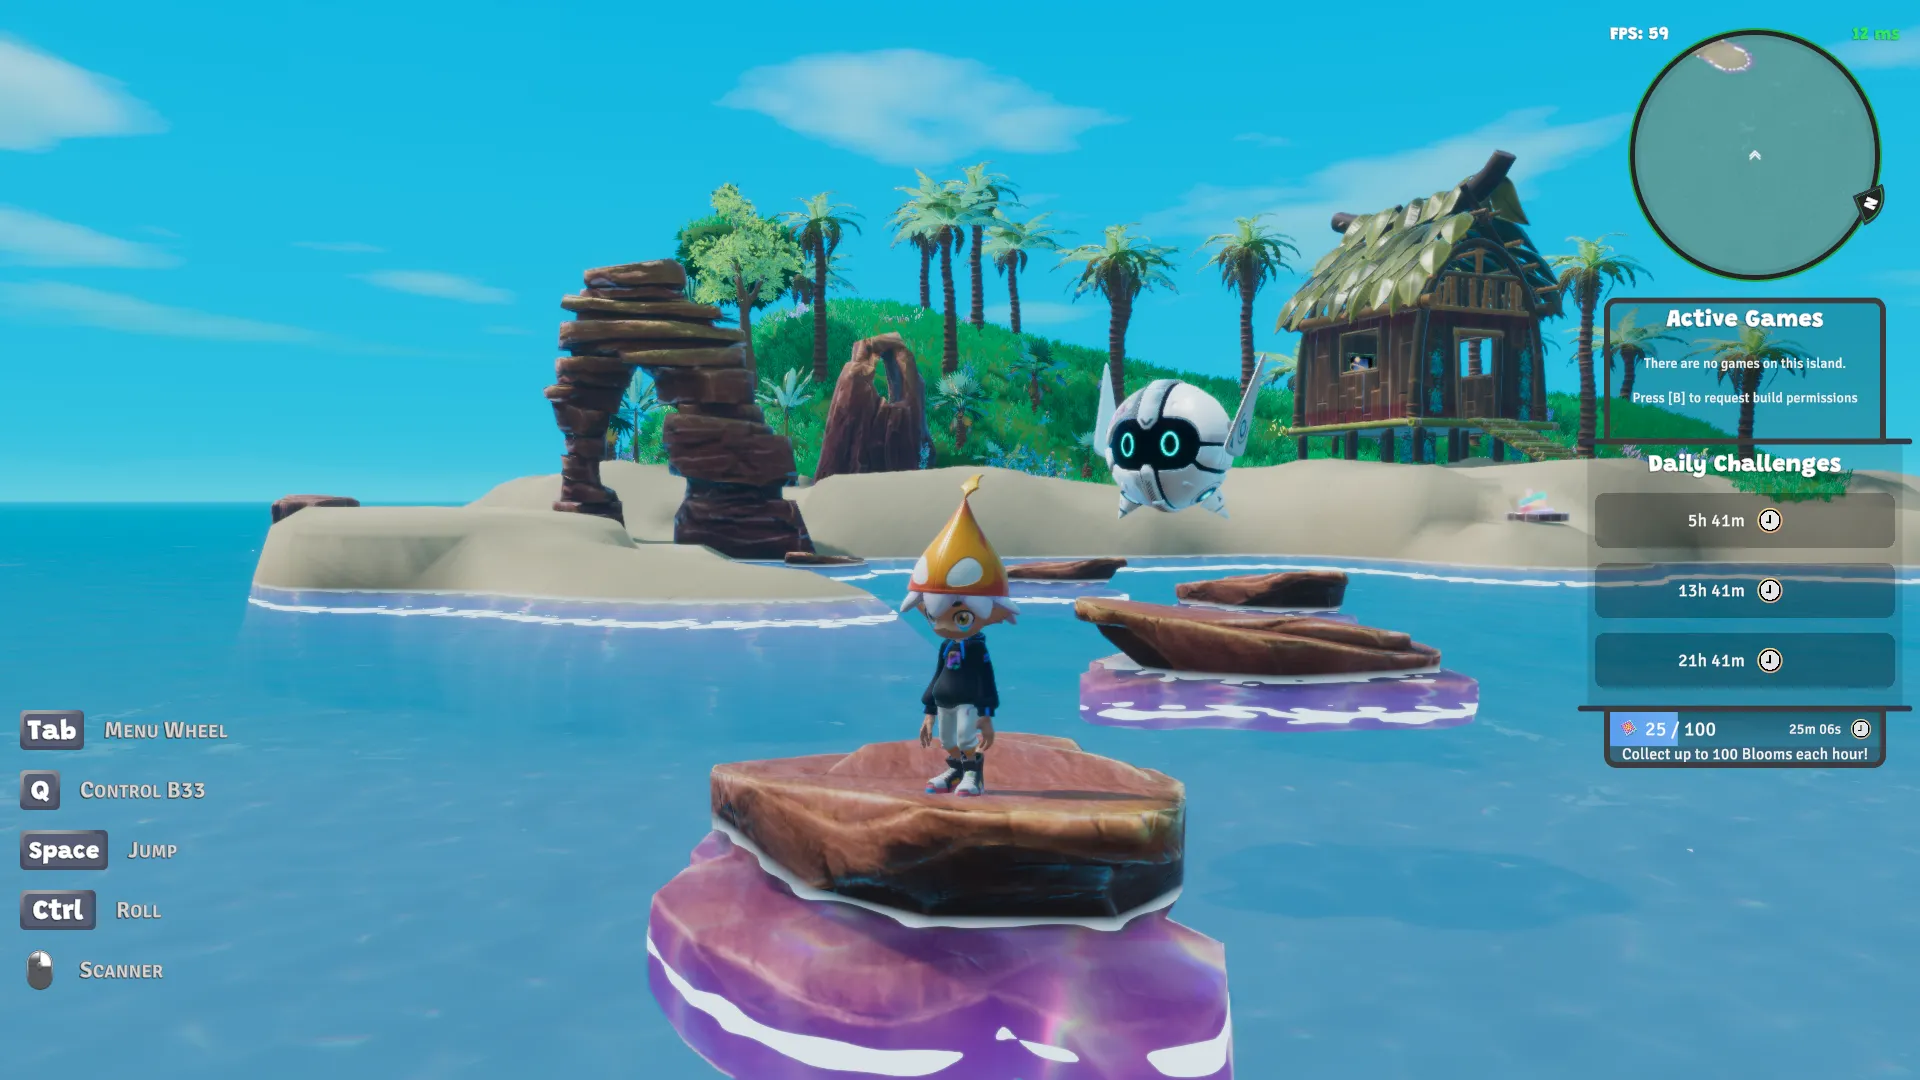 아치형 암석과 물 속에 있는 암석 디딤돌이 있는 3D 렌더링된 섬을 보여주는 Nifty Island 스크린샷입니다. 떠다니는 로봇과 함께 모자를 쓴 작은 캐릭터가 바위 중 하나에 서 있습니다.